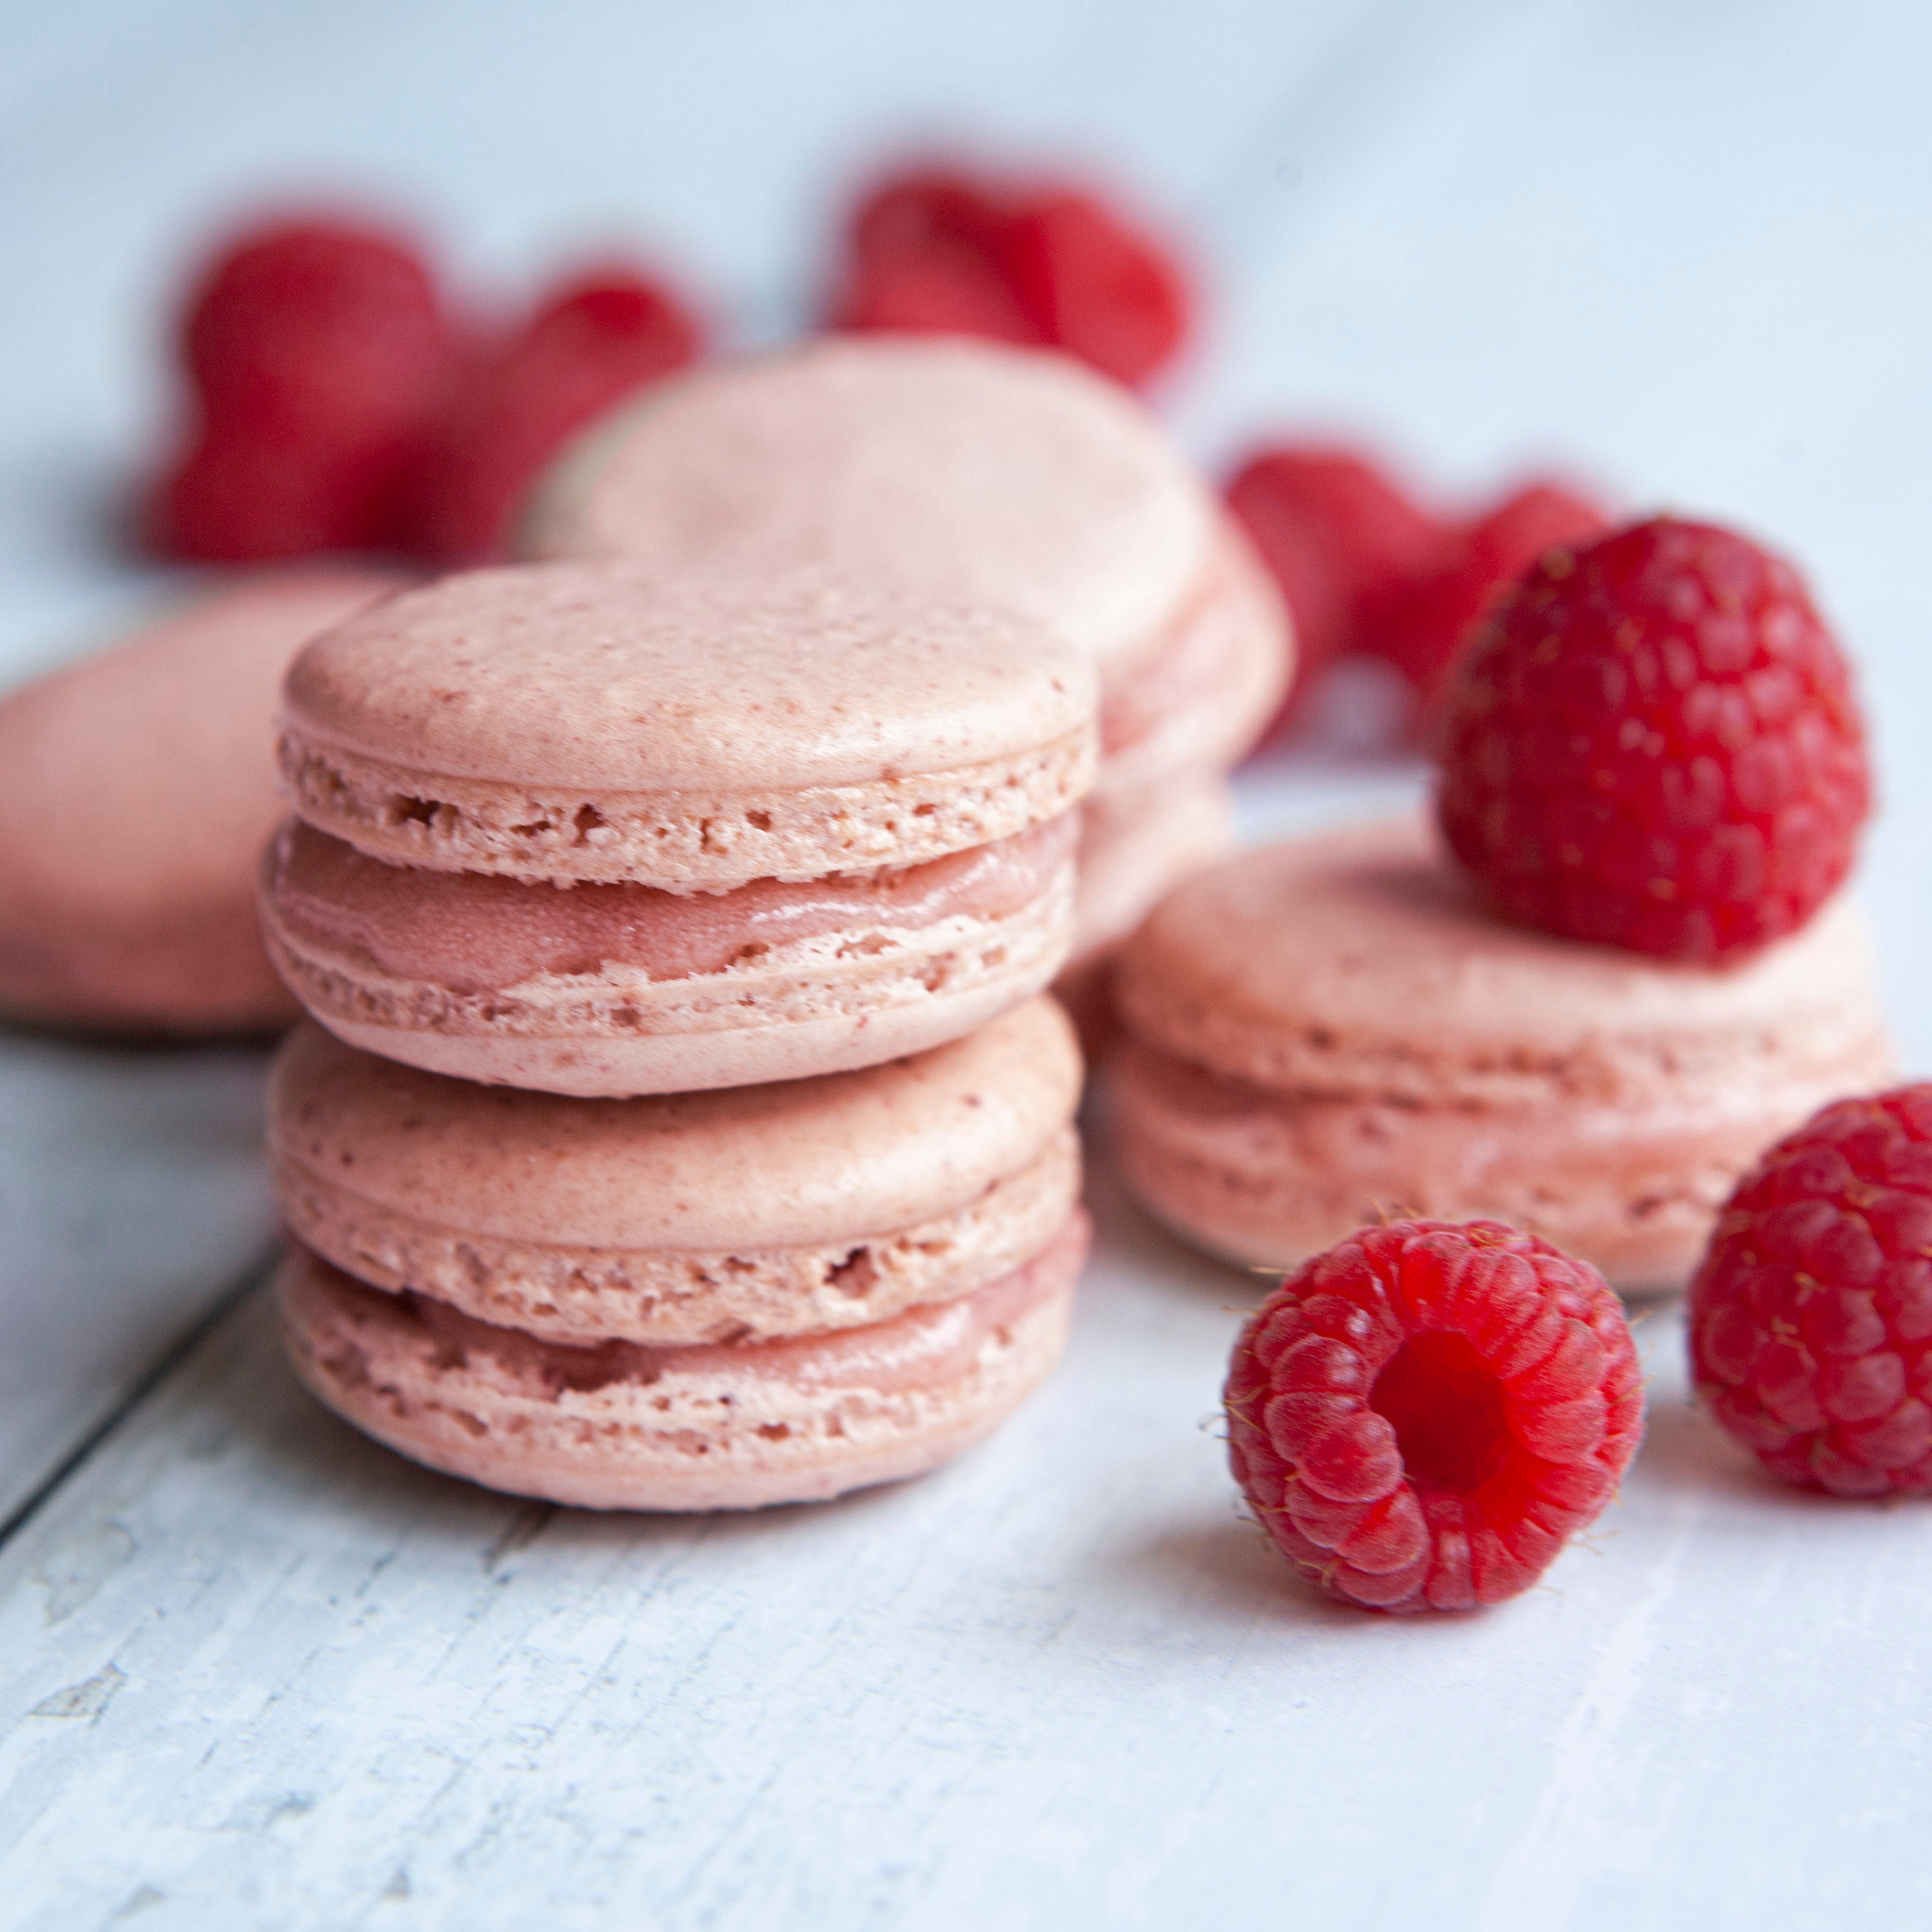 Baking Mix & Bakeware Bundle | Raspberry Macaron Recipe Making Kit | Foodie Gift